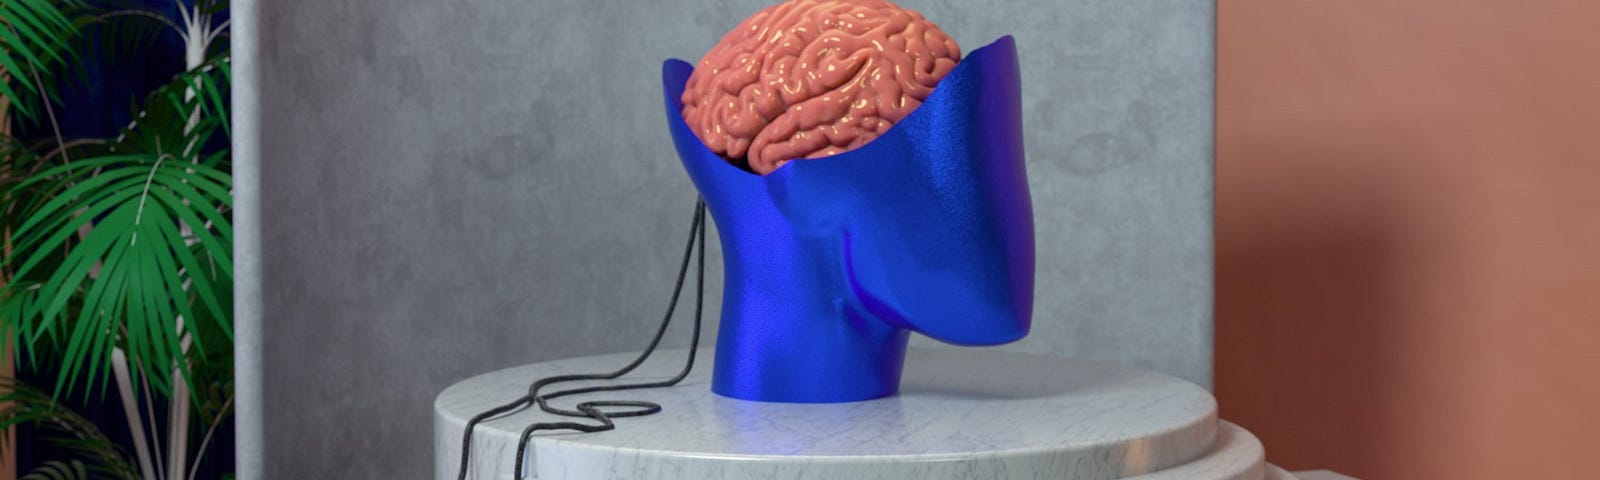 Un modelo de un cerebro dentro de una cabeza parcial esta encima de una mesa. El cerebro esta conectado por cables a dos controles de juegos de video “joysticks” estilo antiguo.